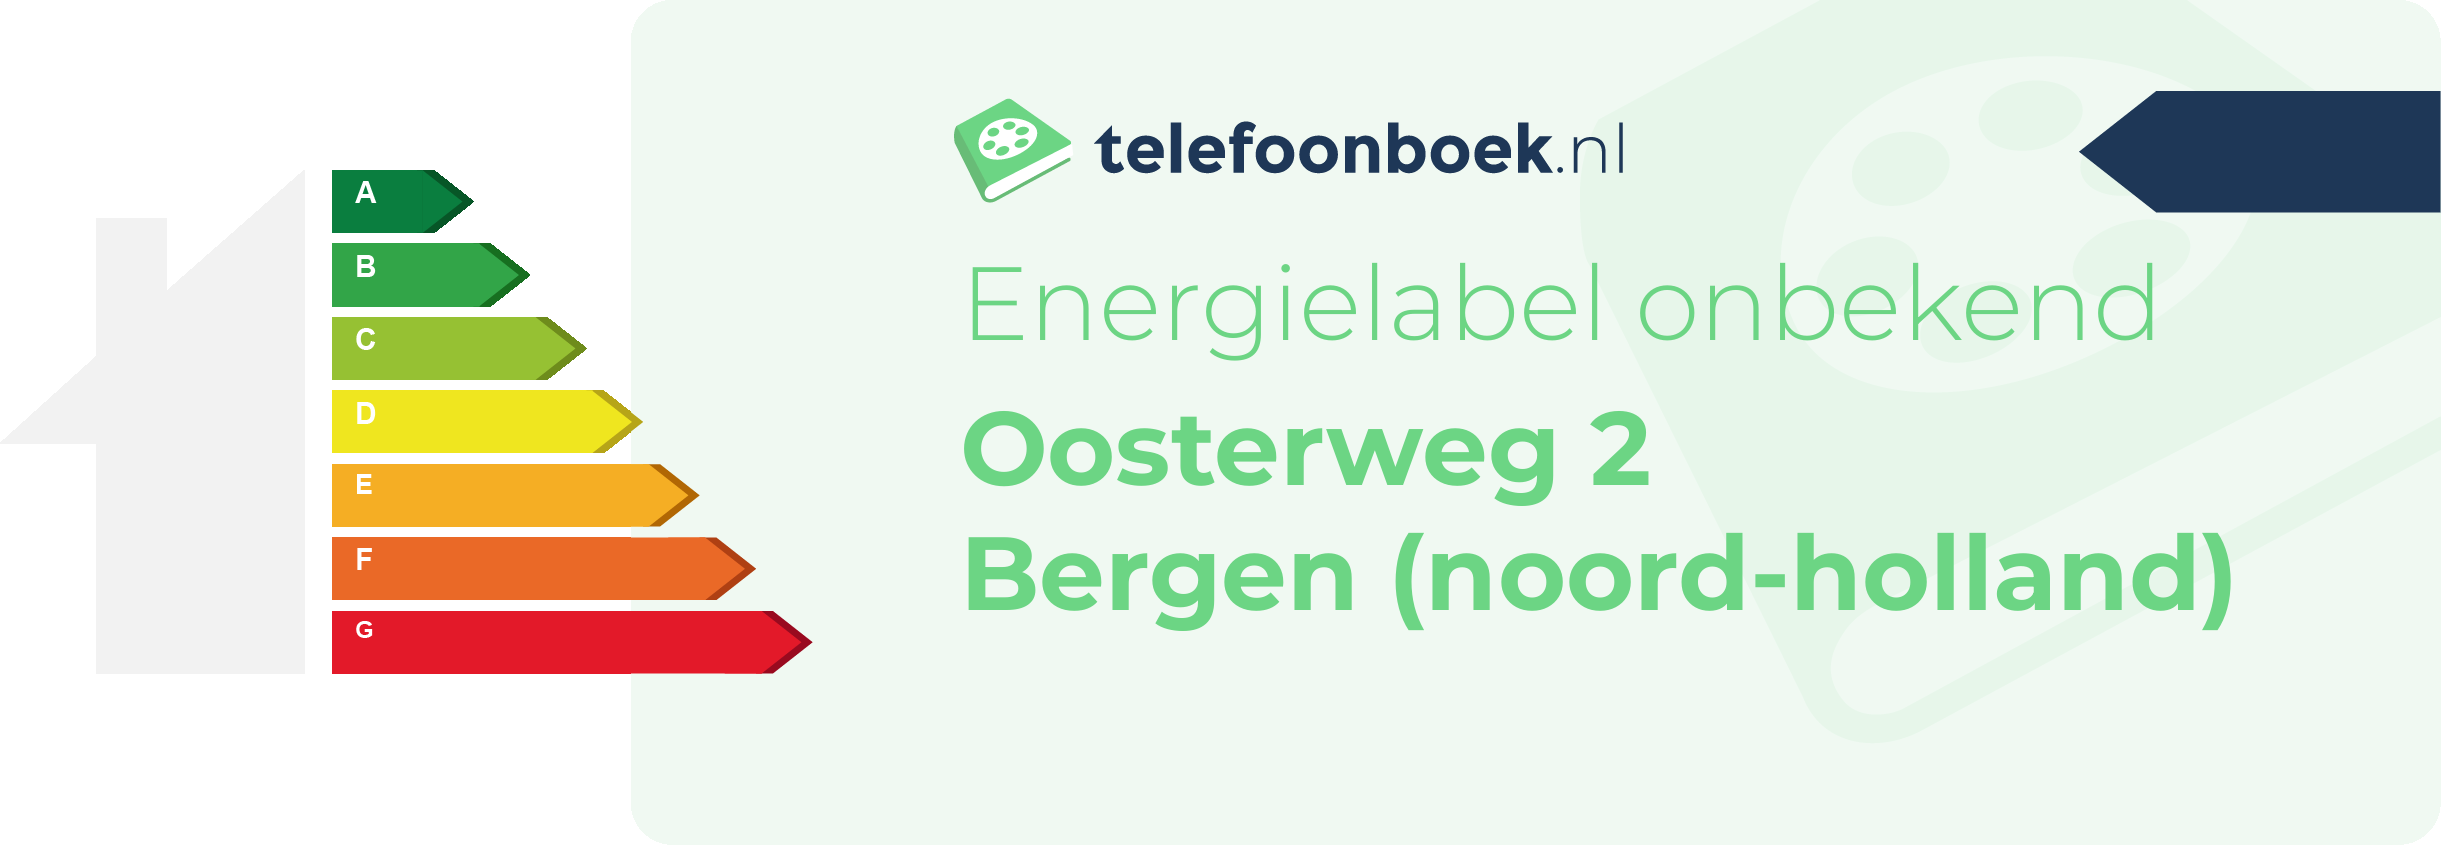 Energielabel Oosterweg 2 Bergen (Noord-Holland)